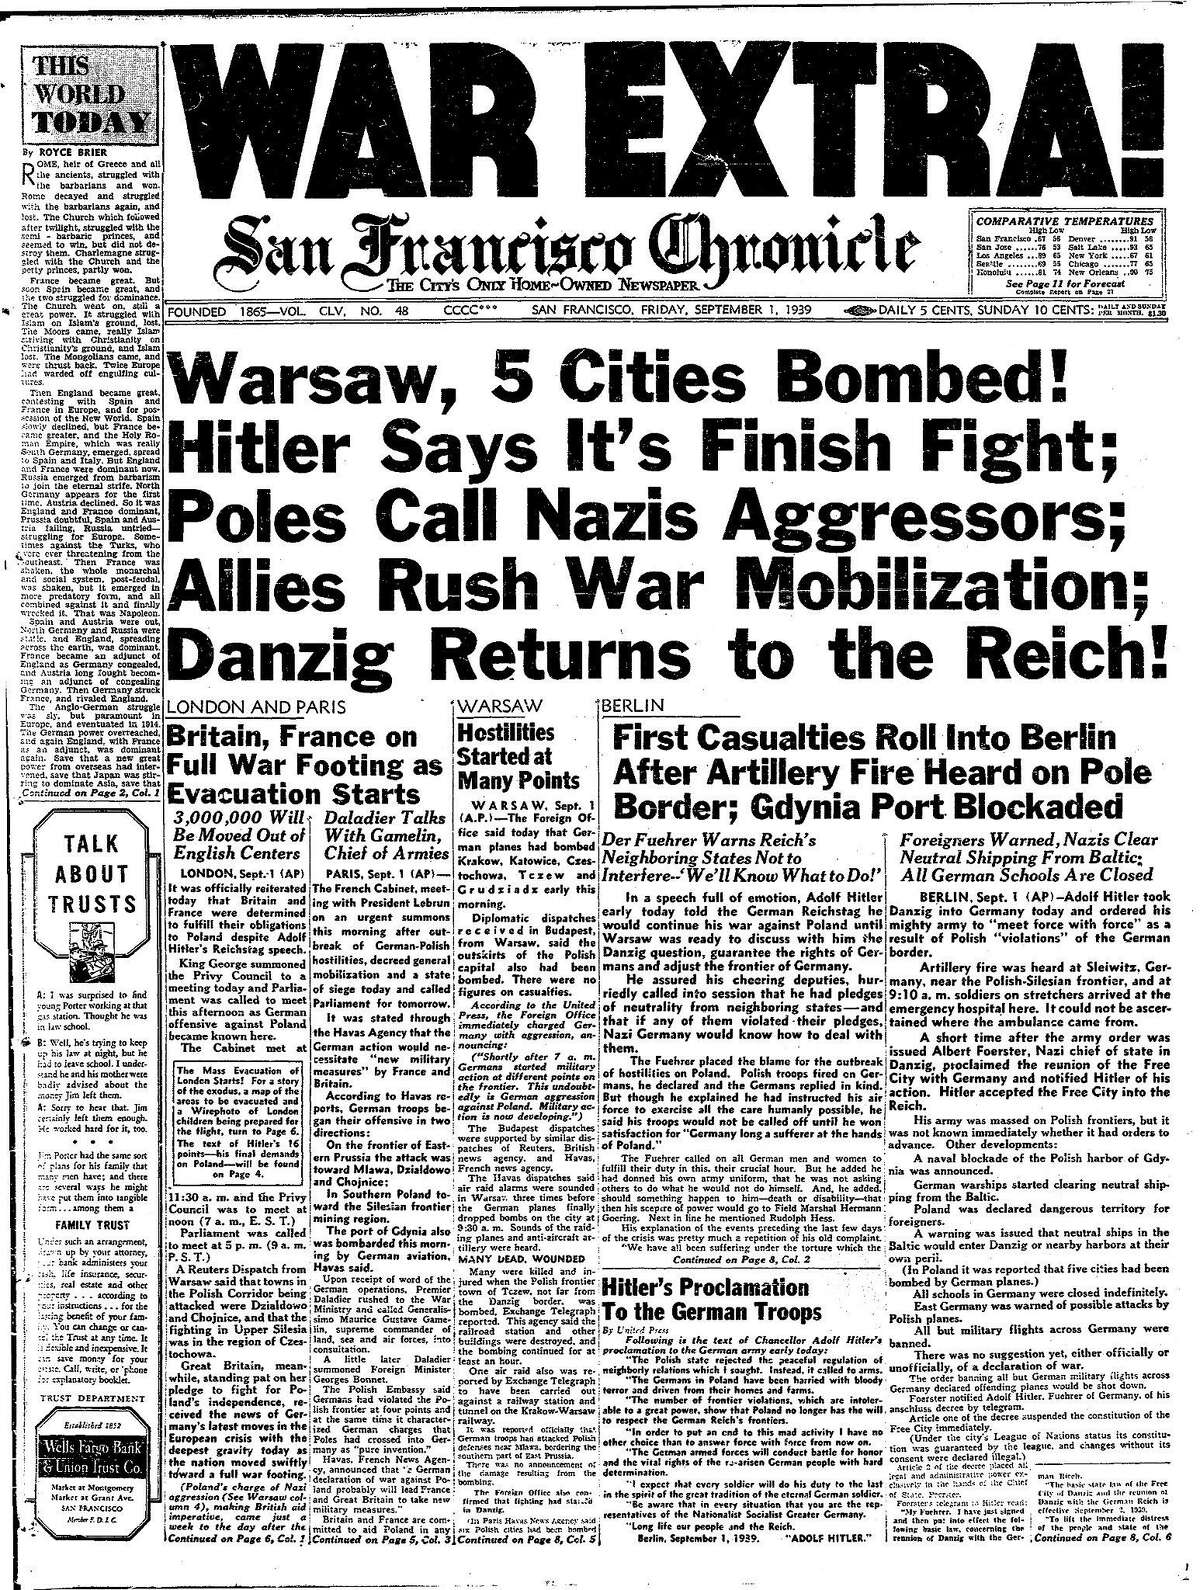 《历史纪事报》1939年9月1日头版战争特刊!德国进攻波兰